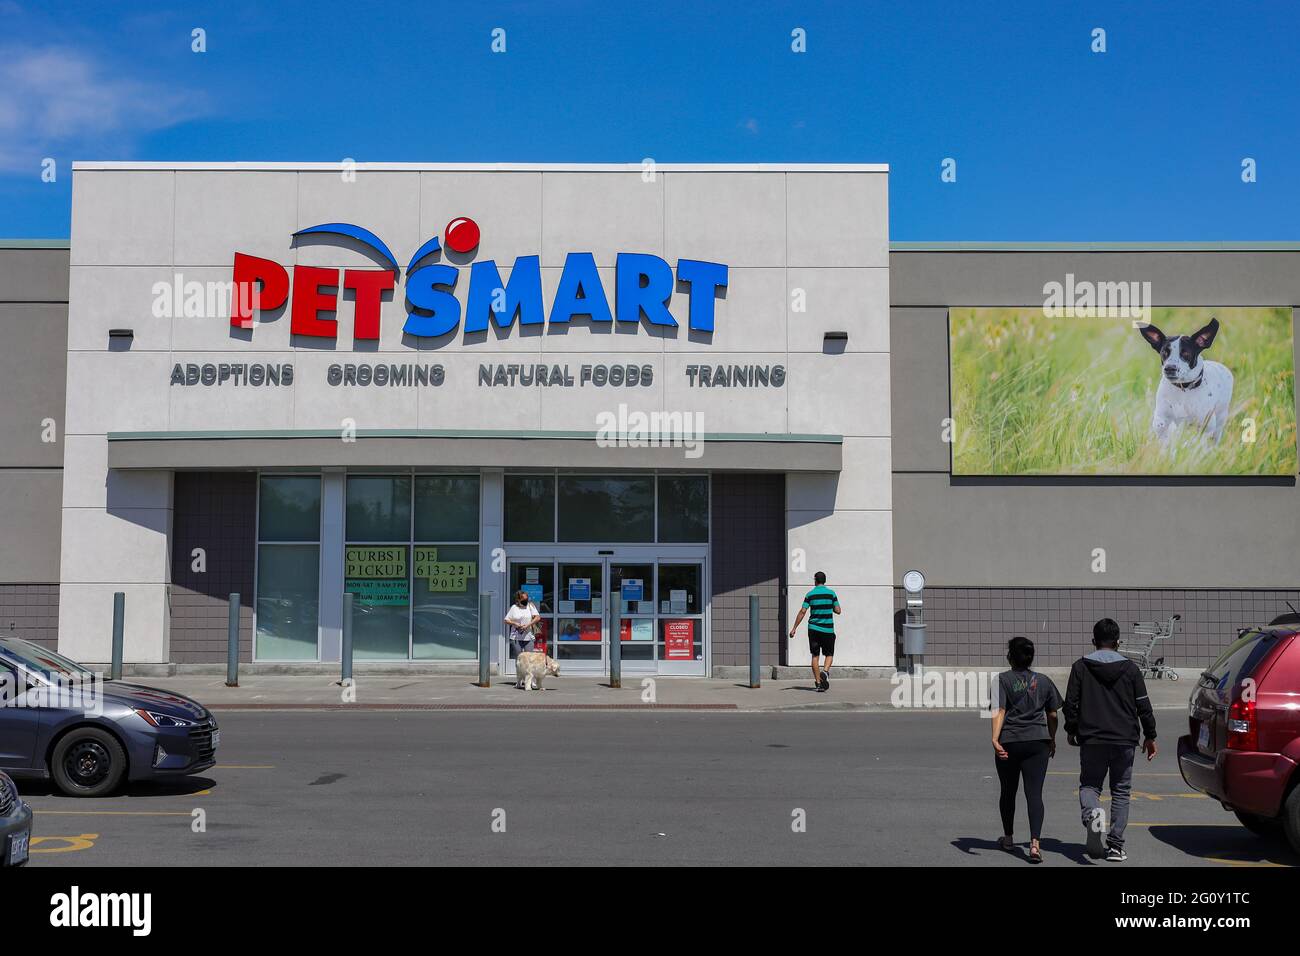 Ottawa, Ontario, Canada - 31 maggio 2021: Un negozio di animali domestici PetSmart su Merivale Road, aperto per il ritiro dal marciapiede durante la pandemia COVID-19. Foto Stock